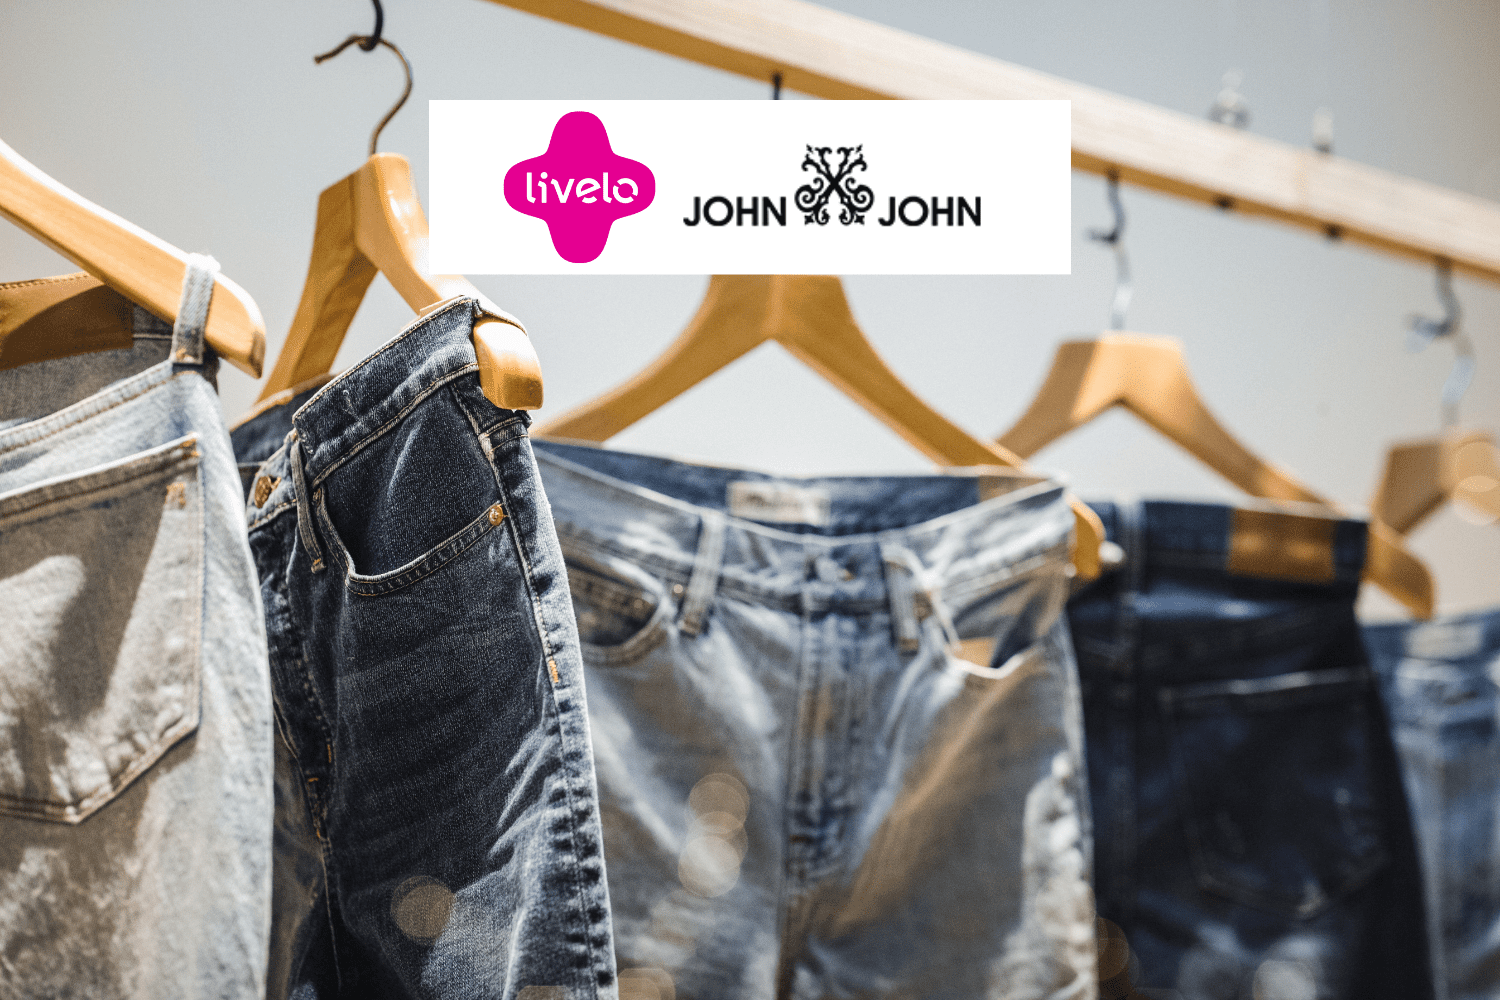 calças Jeans com logo Livelo e John John 8 pontos Livelo